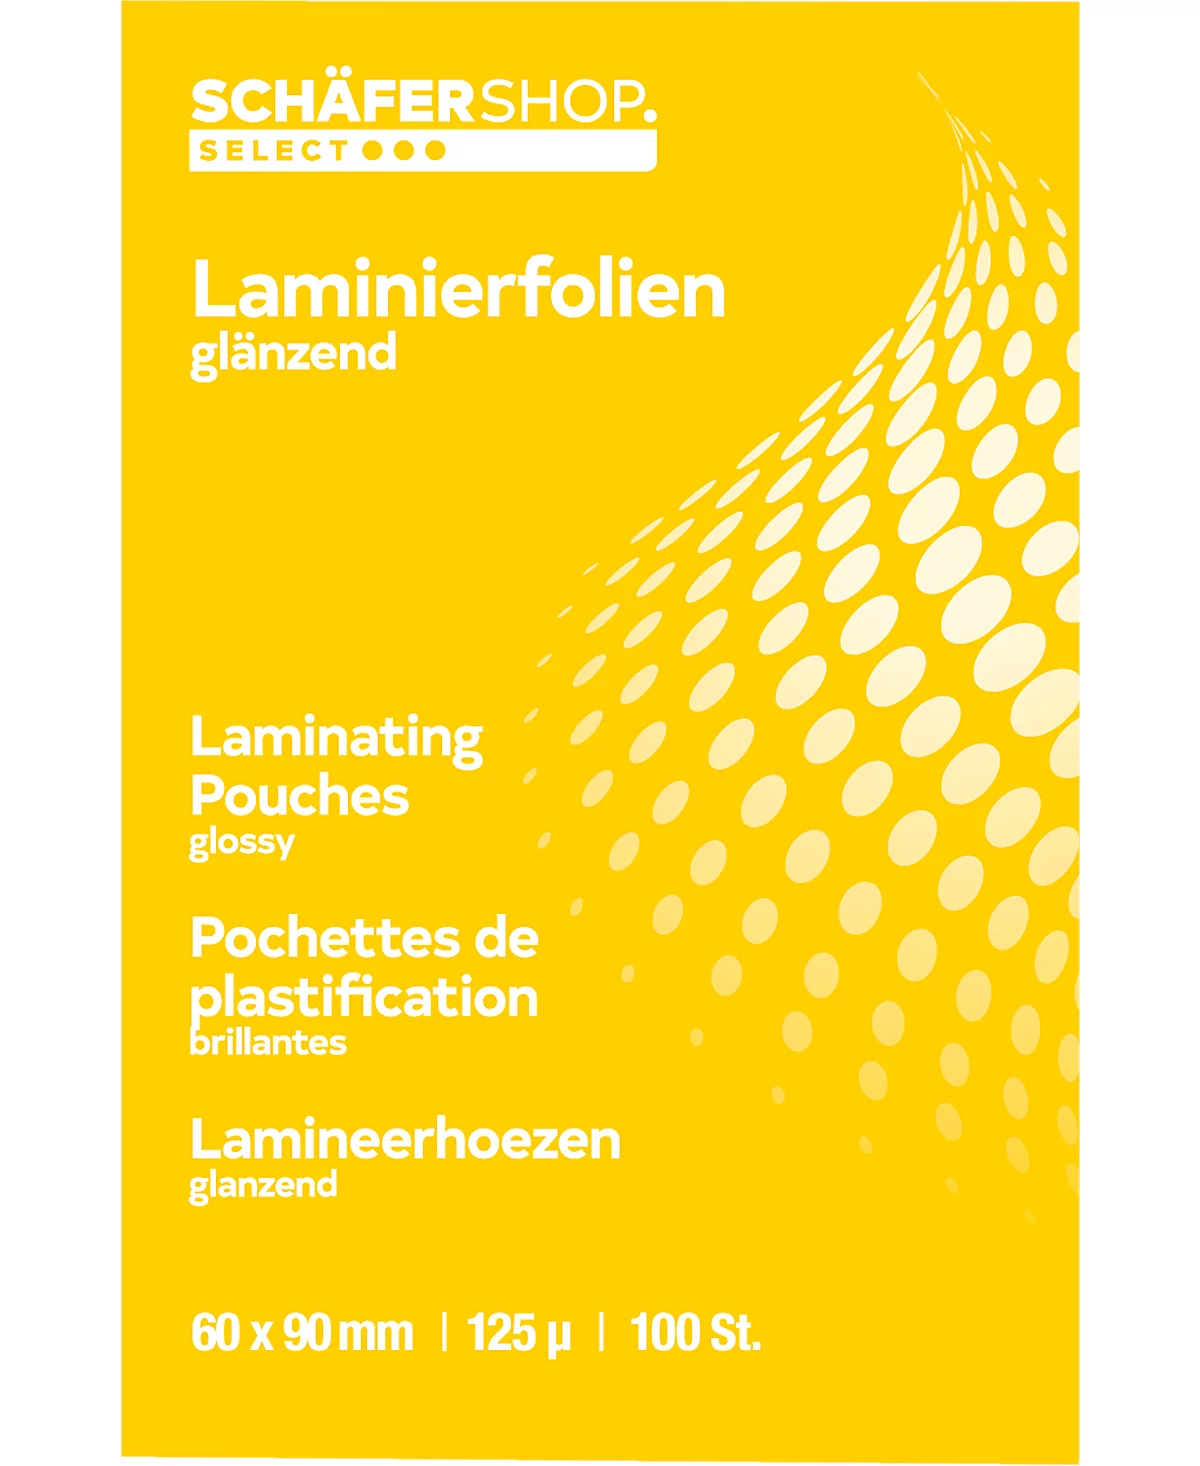 Schäfer Shop Select Laminierfolien, 60 x 90 mm, 125 mic, 100 Stück